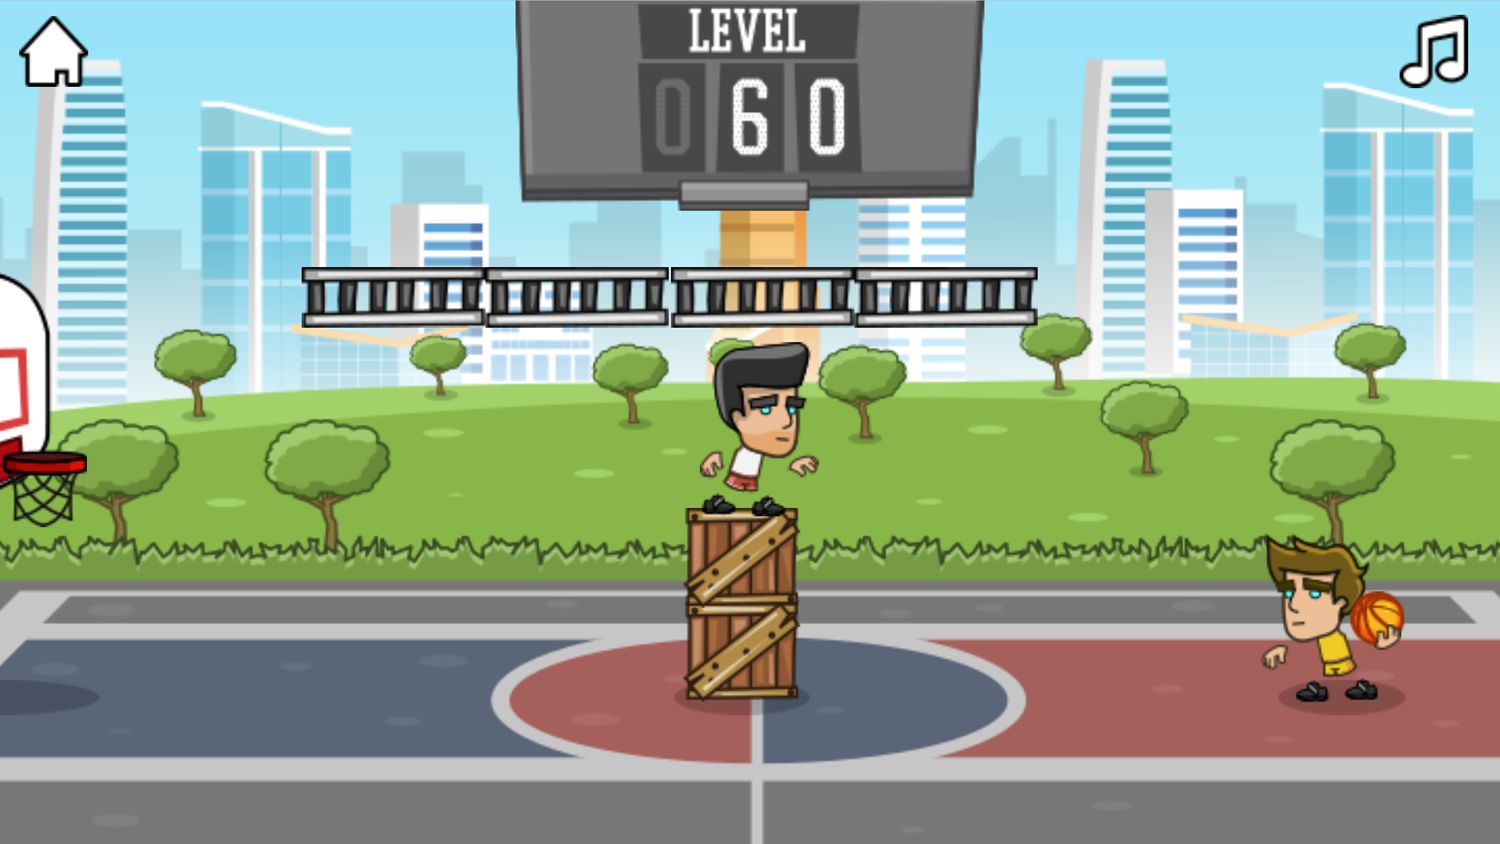 Street Dunk Game Training Final Level Screenshot.